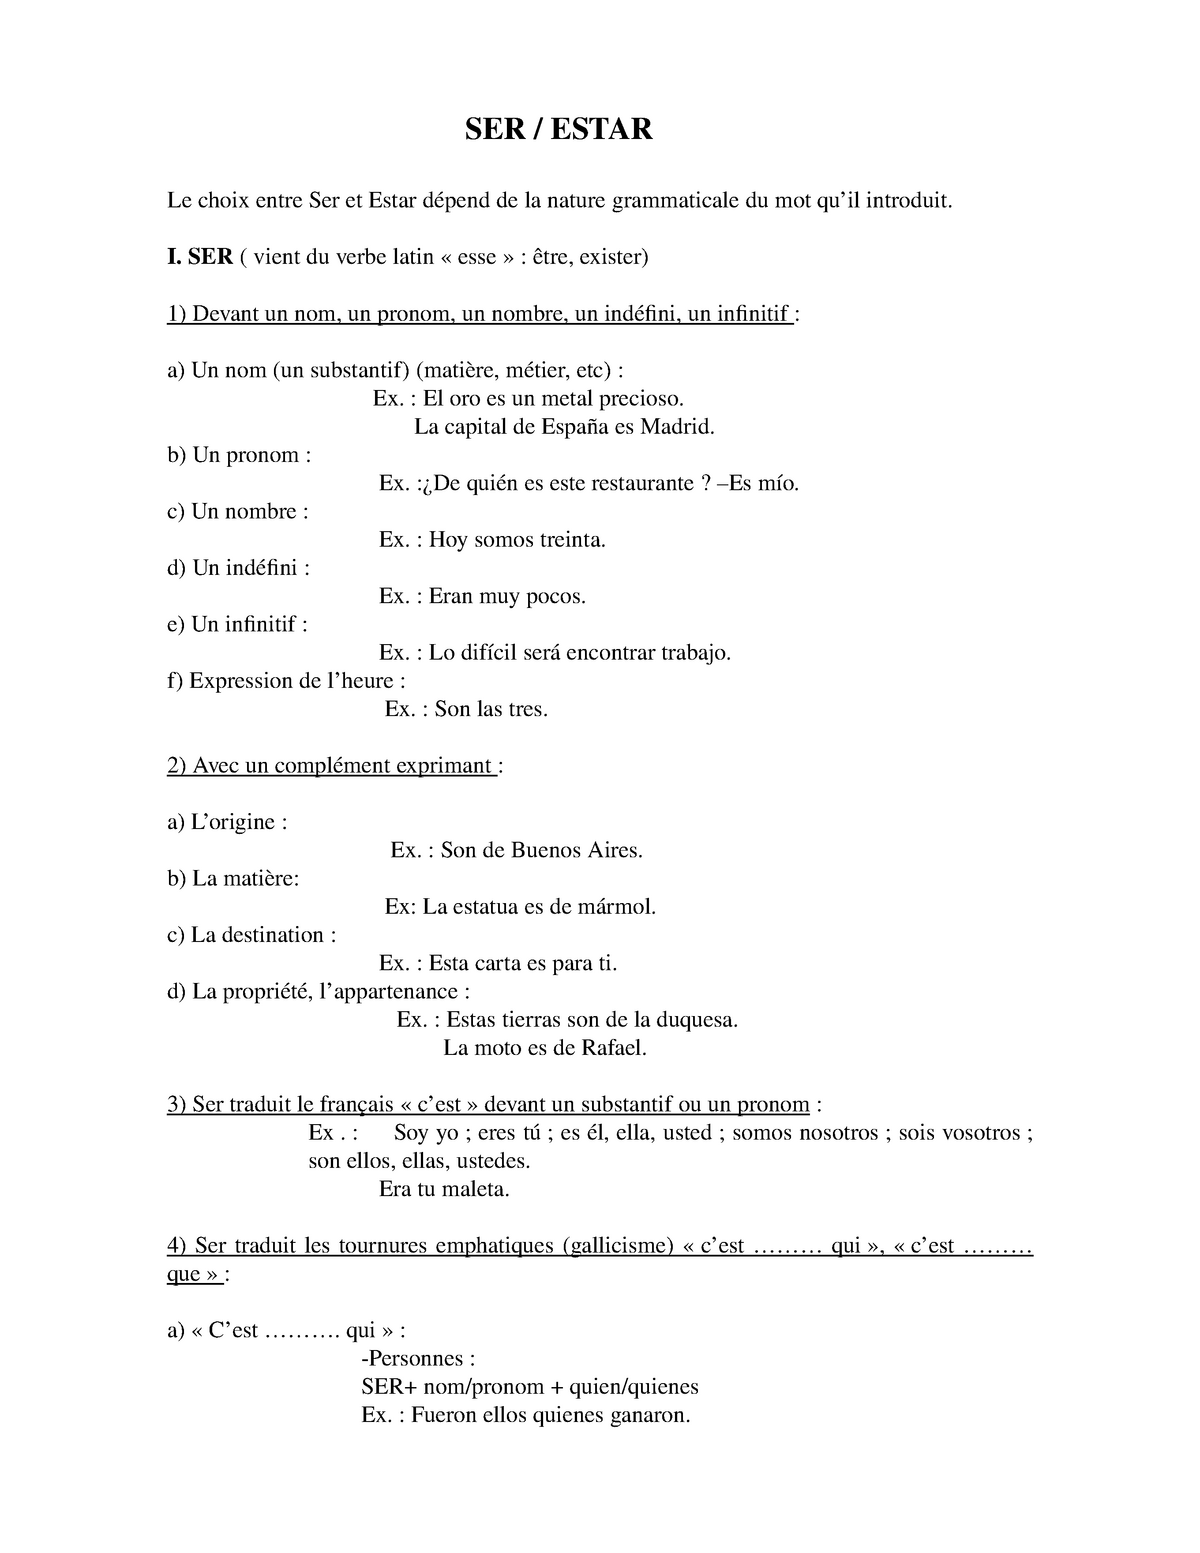 Cours De Grammaire Espagnol L Emploi Des Auxiliaires Ser Et Estar Studocu